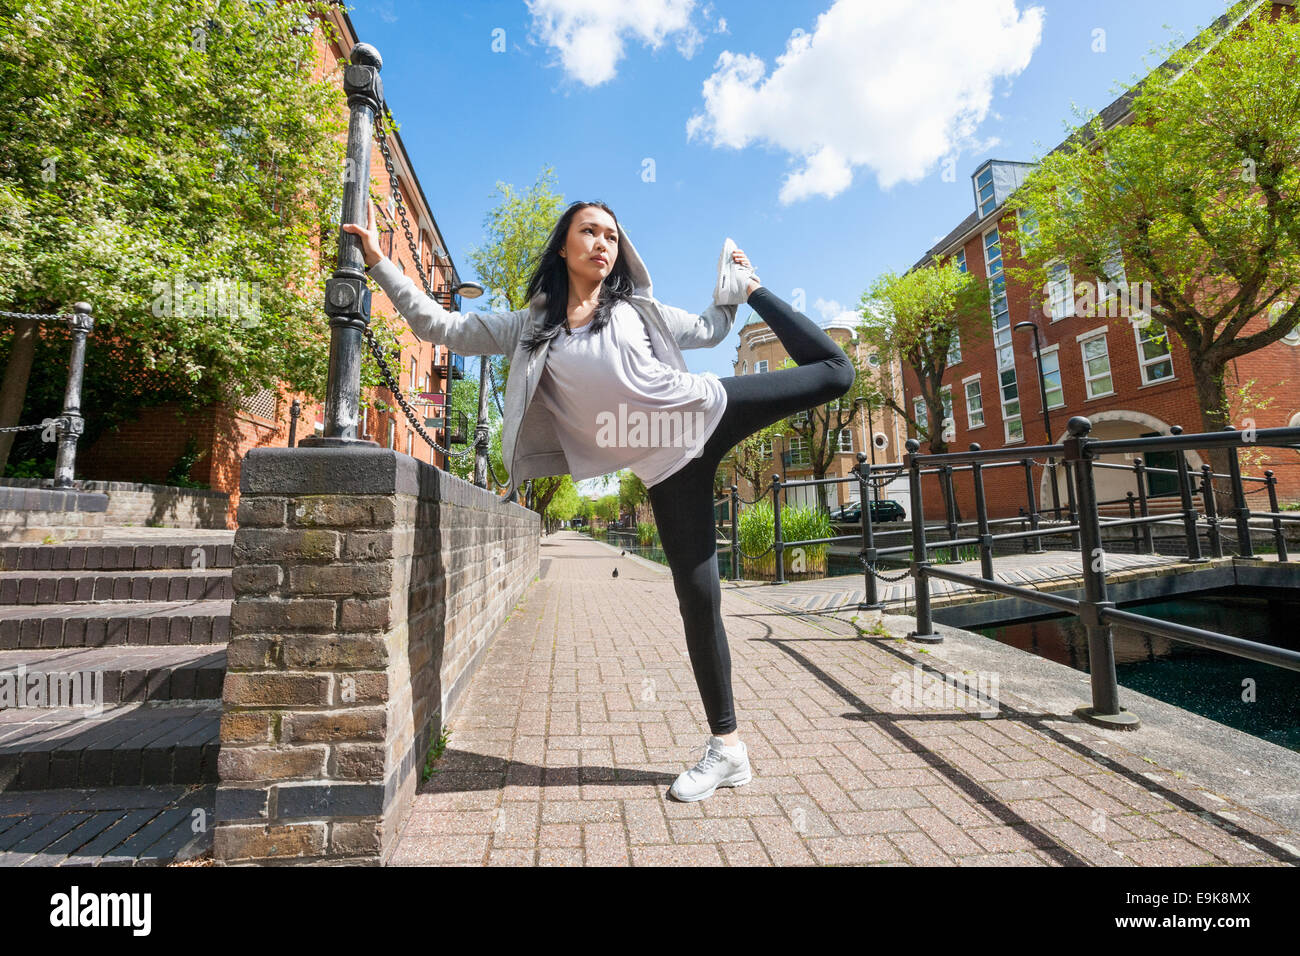 Longueur totale de jeunes fit woman exercising on sidewalk Banque D'Images